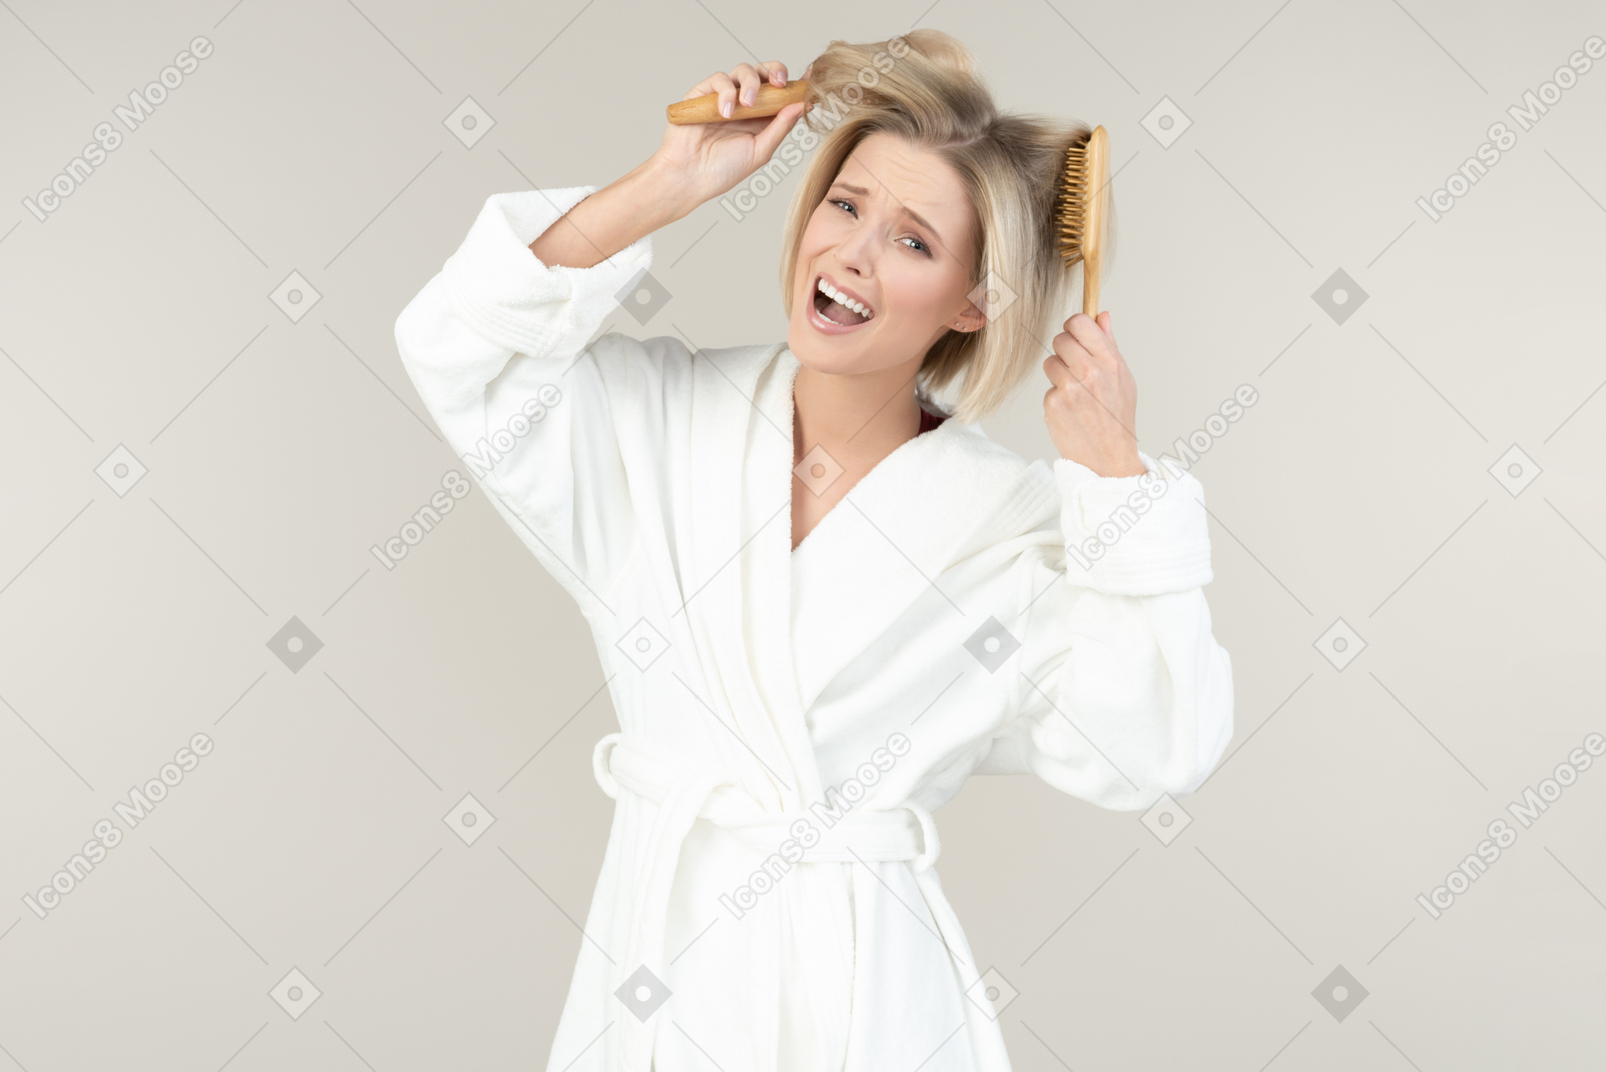 Giovane donna bionda in un accappatoio bianco in posa con tutti i tipi di articoli da toeletta